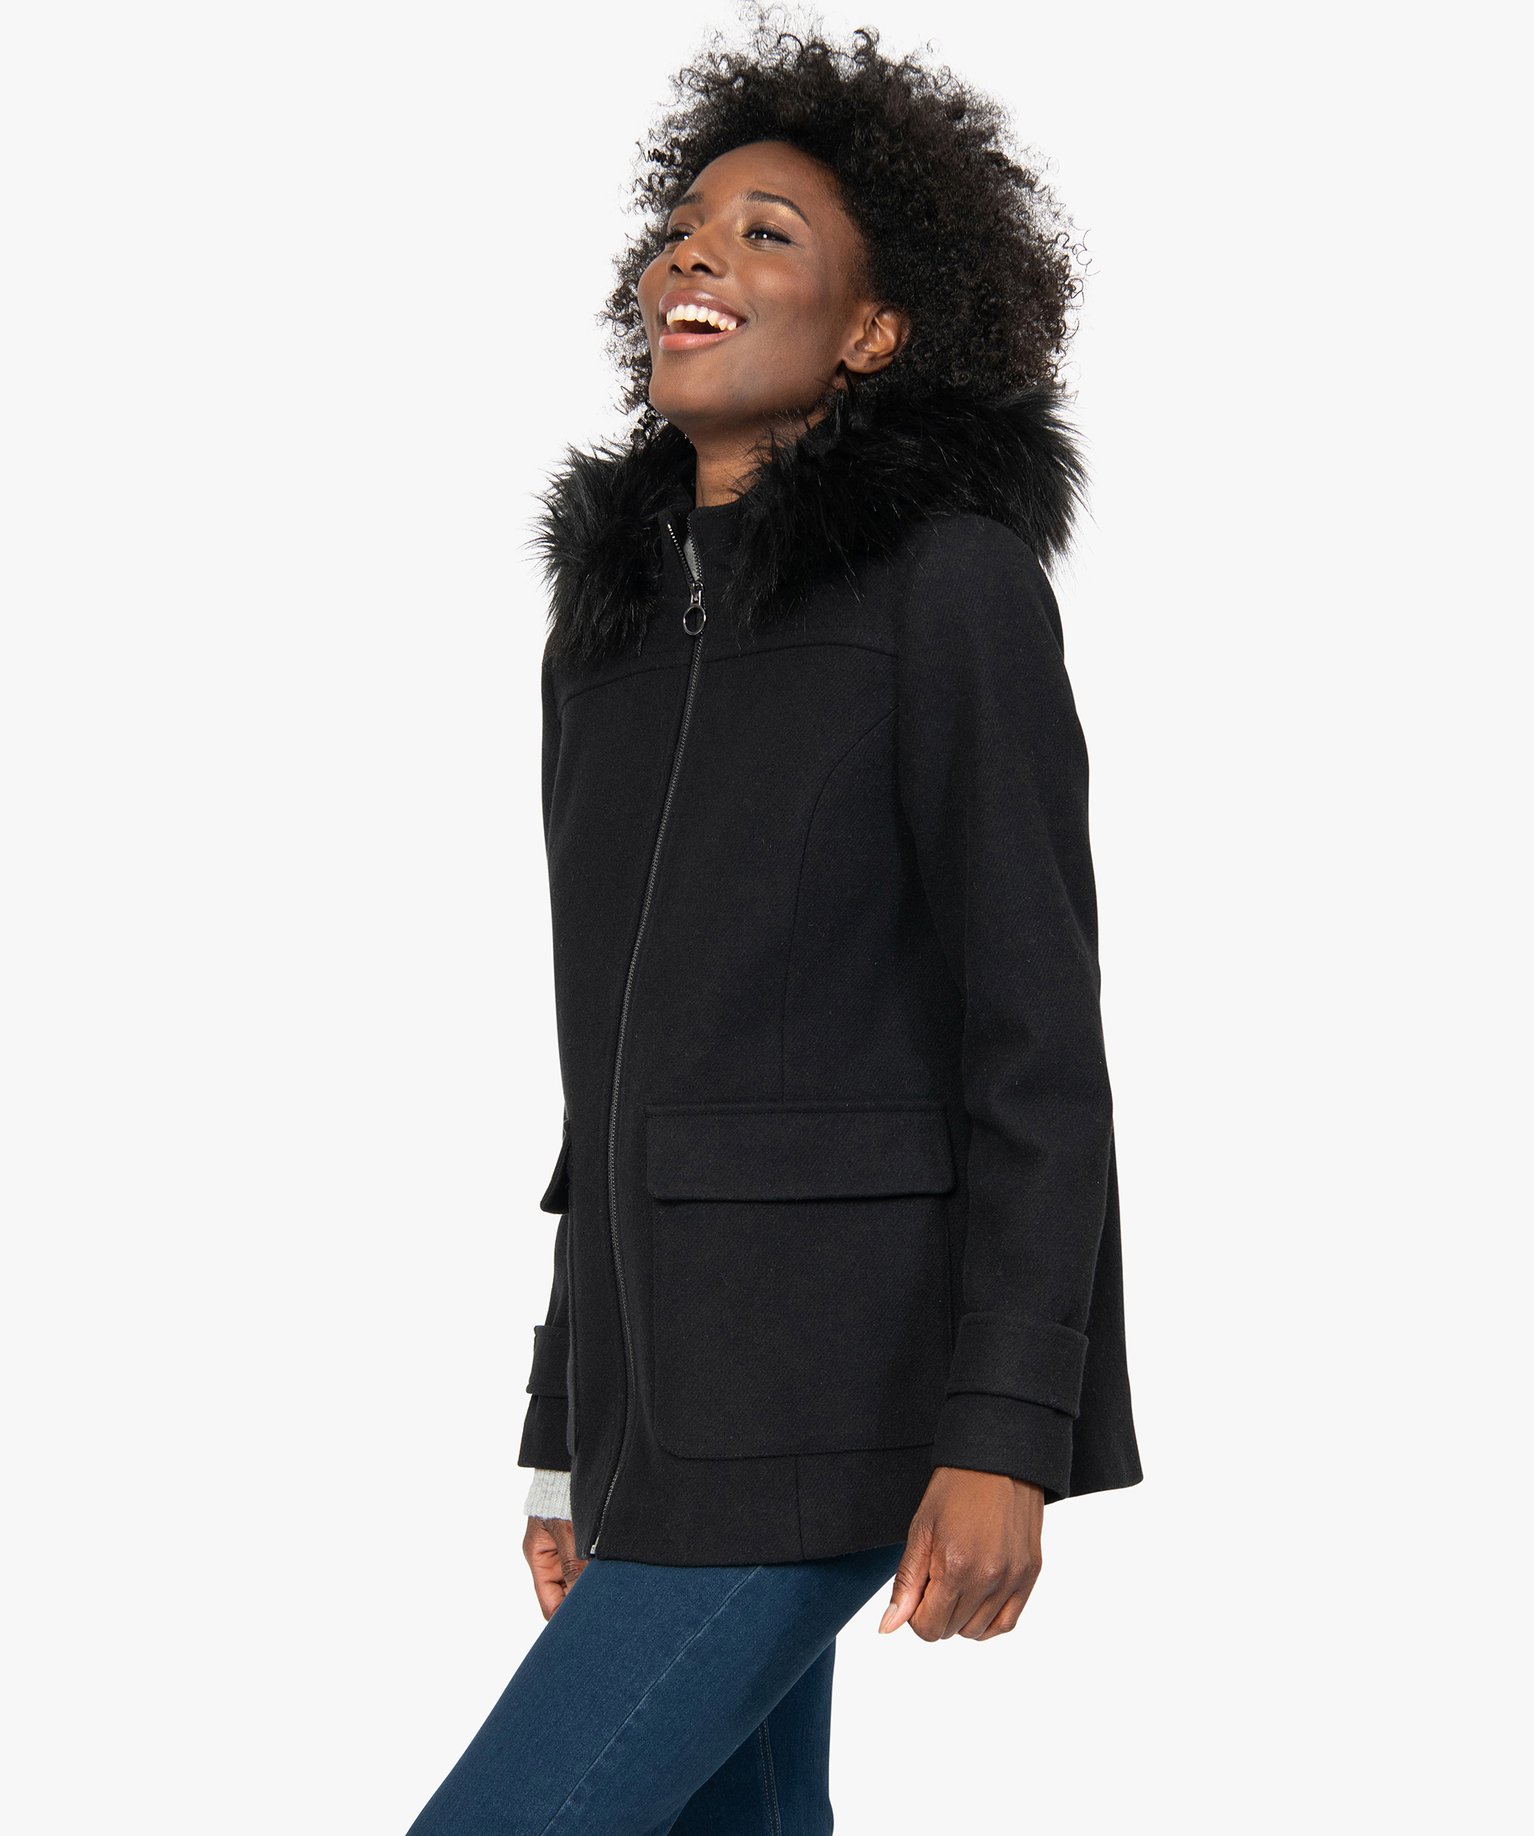 manteau femme court a capuche fantaisie noir manteaux